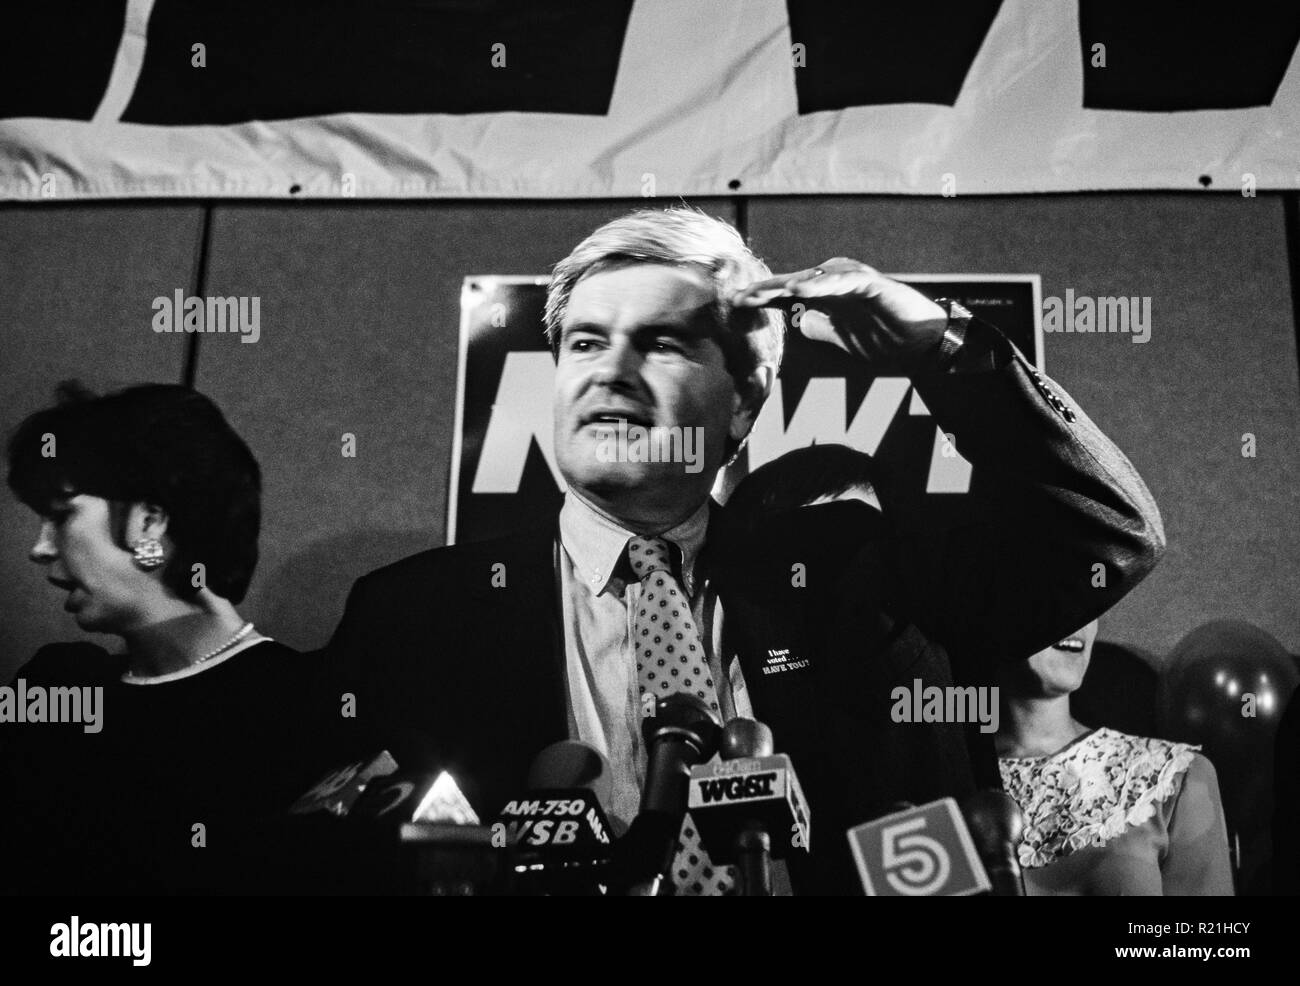 Newt Gingrich parle de son parti de victoire est un homme politique et auteur américain qui a servi comme 50ème Président de la Chambre des représentants des États-Unis de 1995 à 1999. Membre du Parti républicain, il a été le représentant des États-Unis pour la 6ème circonscription du Congrès de Géorgie desservant le nord d'Atlanta et les régions voisines de 1979 jusqu'à sa démission en 1999. En 2012, Gingrich s’est présenté sans succès à la nomination républicaine à la présidence des États-Unis. Banque D'Images